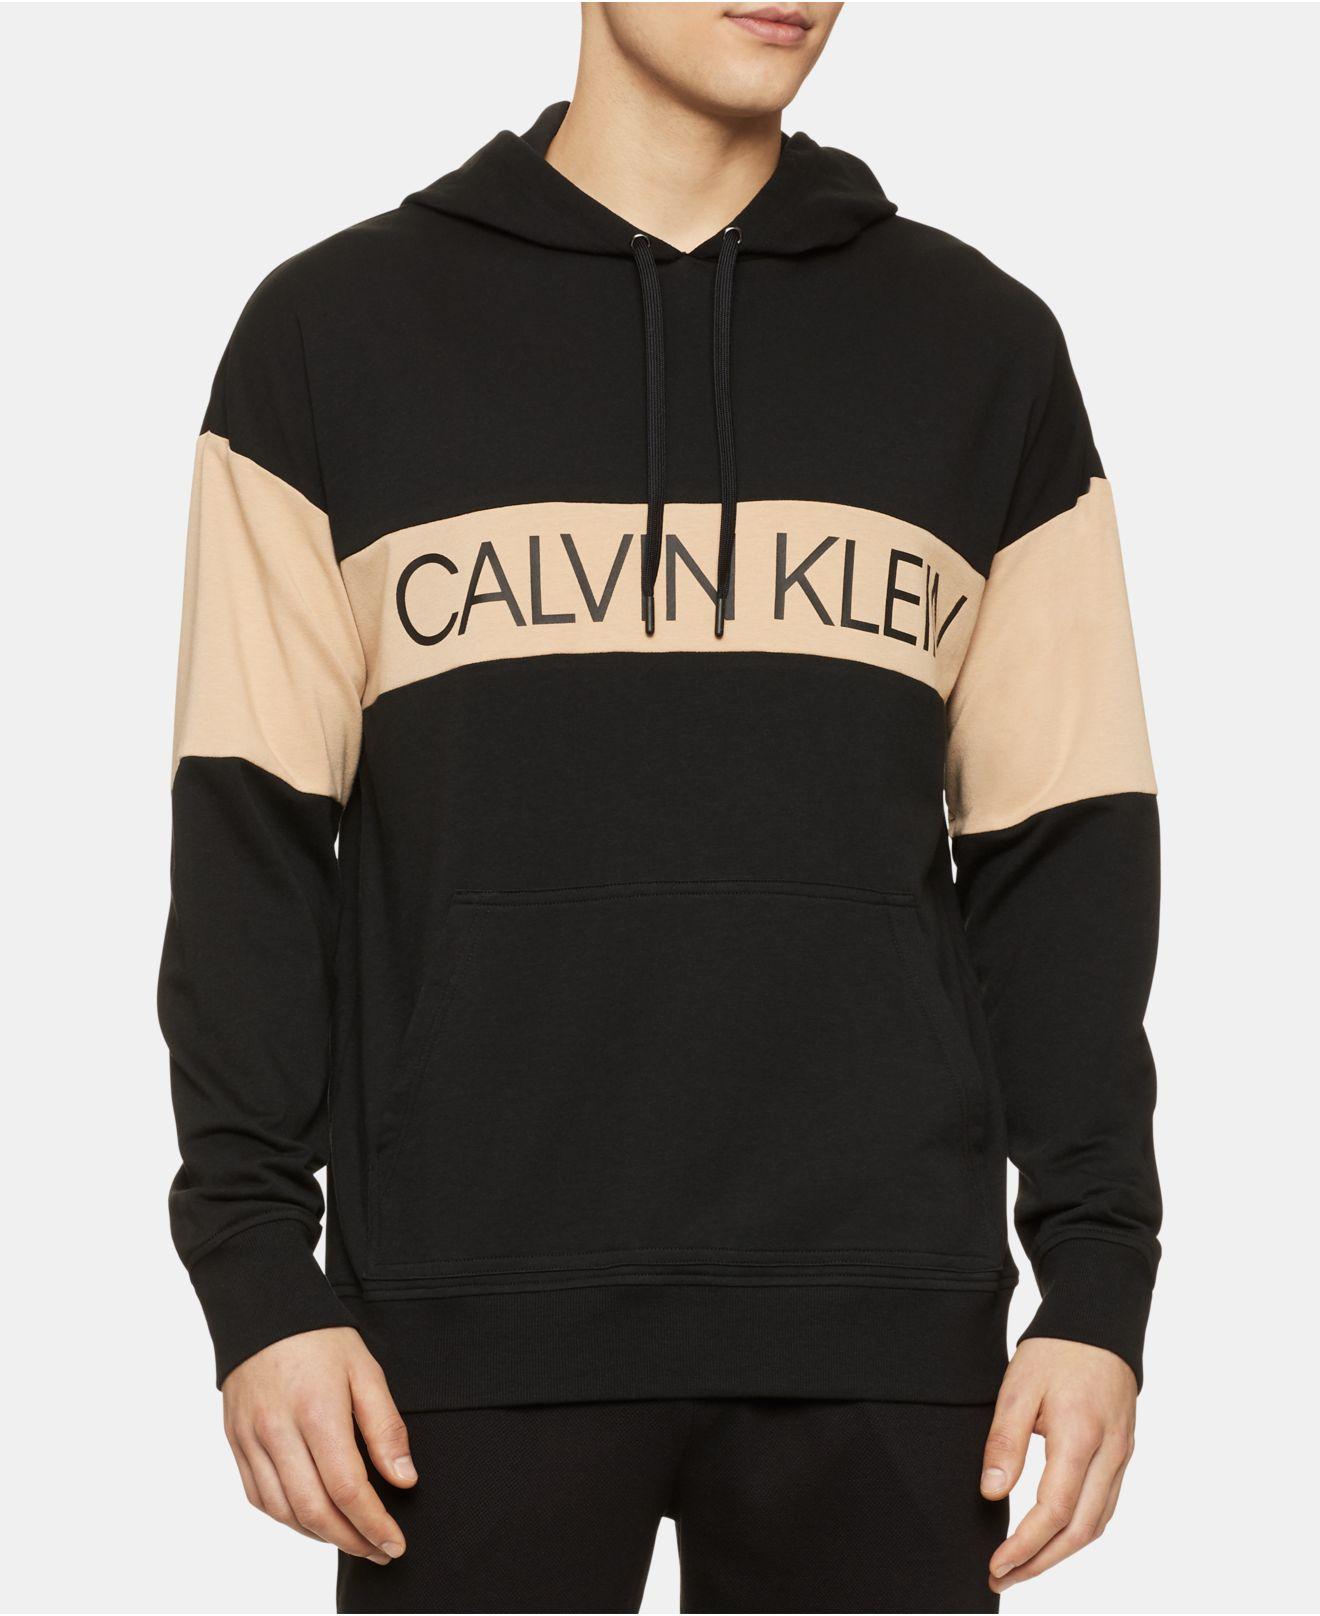 Calvin Klein Colorblocked Logo Hoodie in Black for Men - Lyst